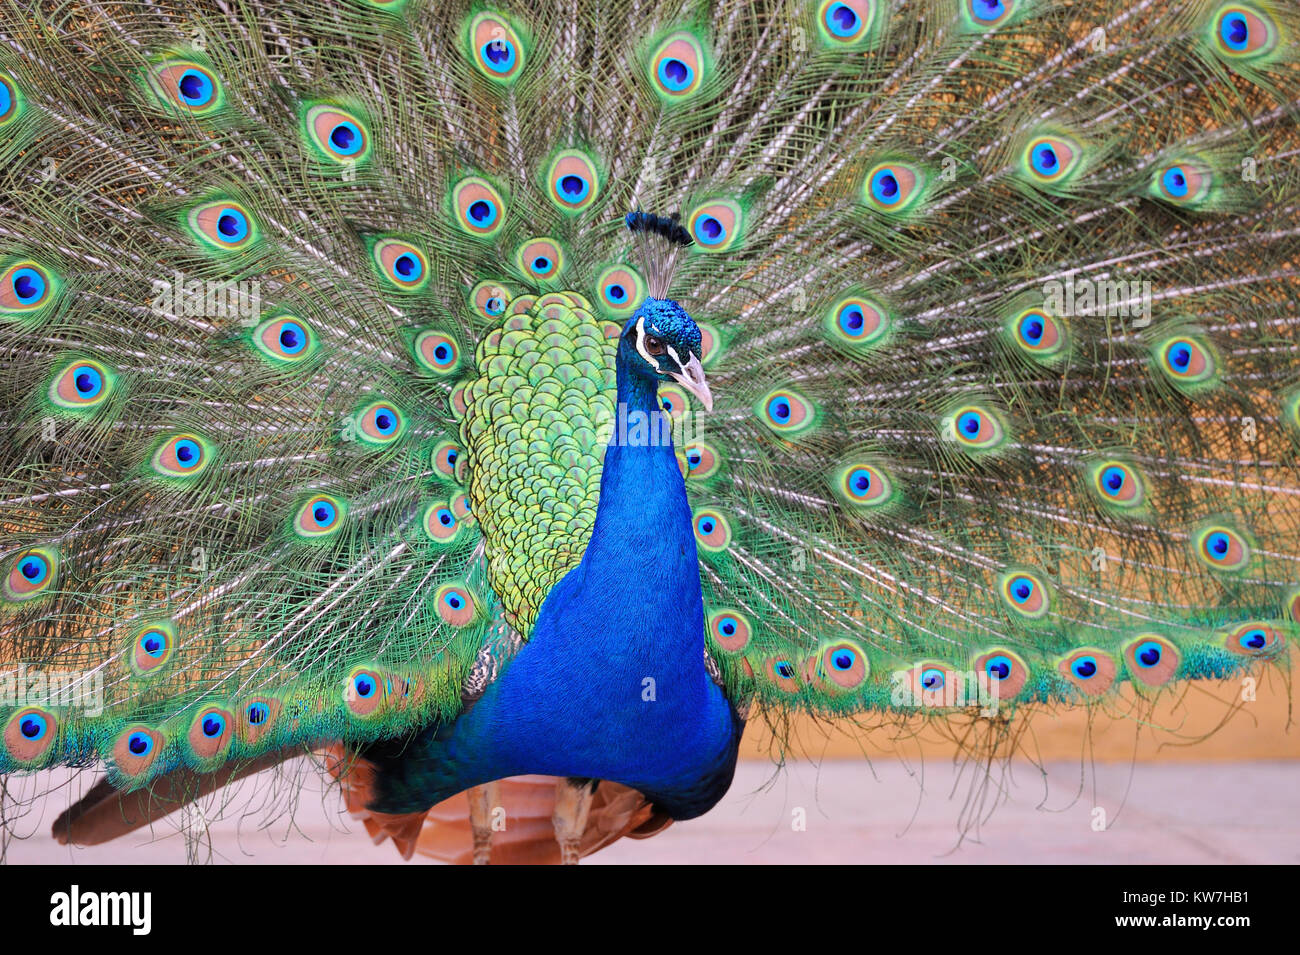 Portrait de peacock posant avec des plumes Banque D'Images